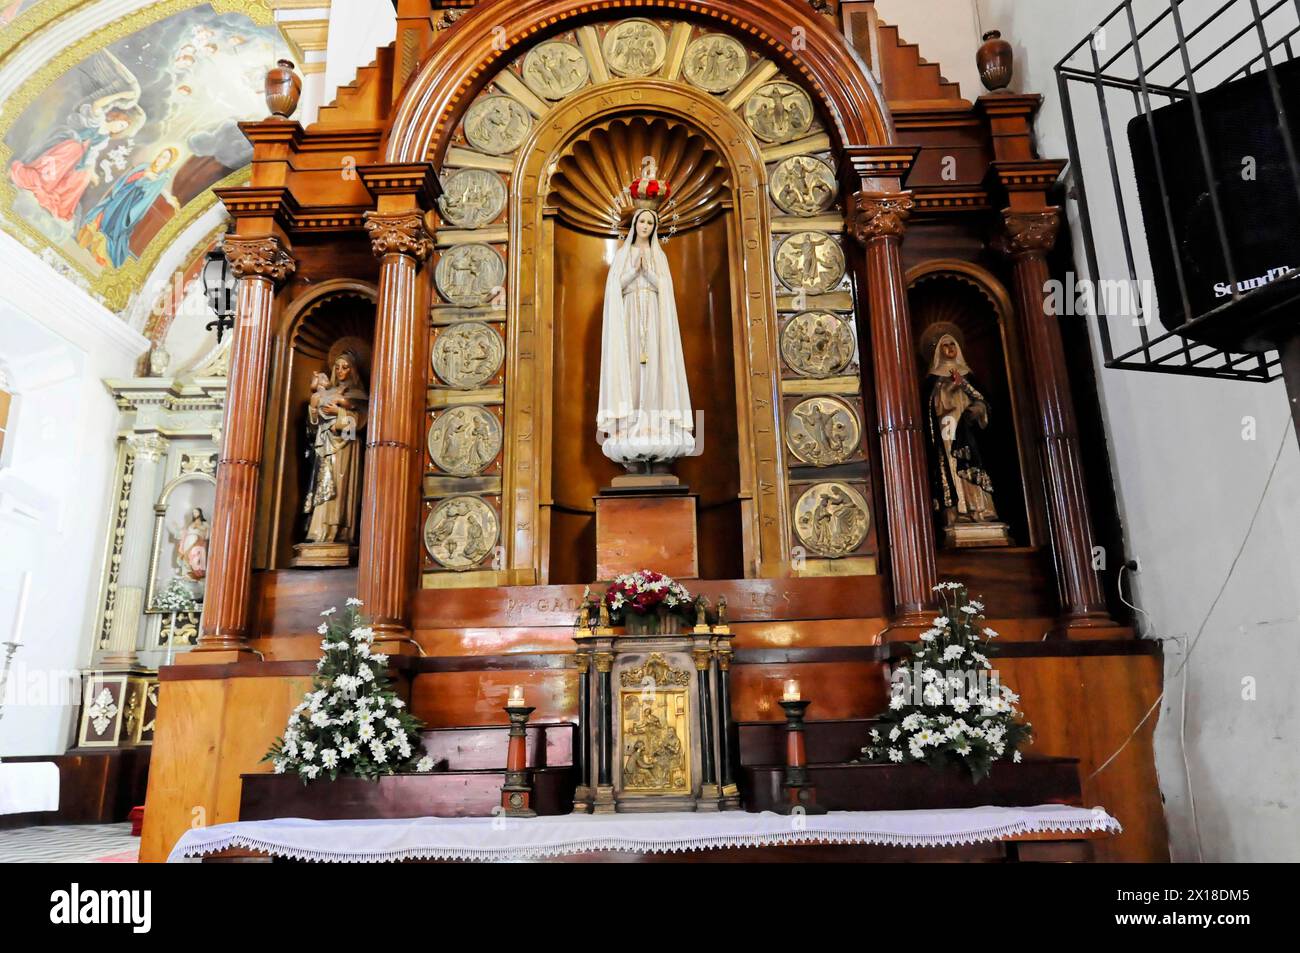 Kirche La Merced, erbaut um 1762, Leon, Nicaragua, ein Altar mit einer Marienstatue, umgeben von Heiligen, Kerzen und Blumen Stockfoto